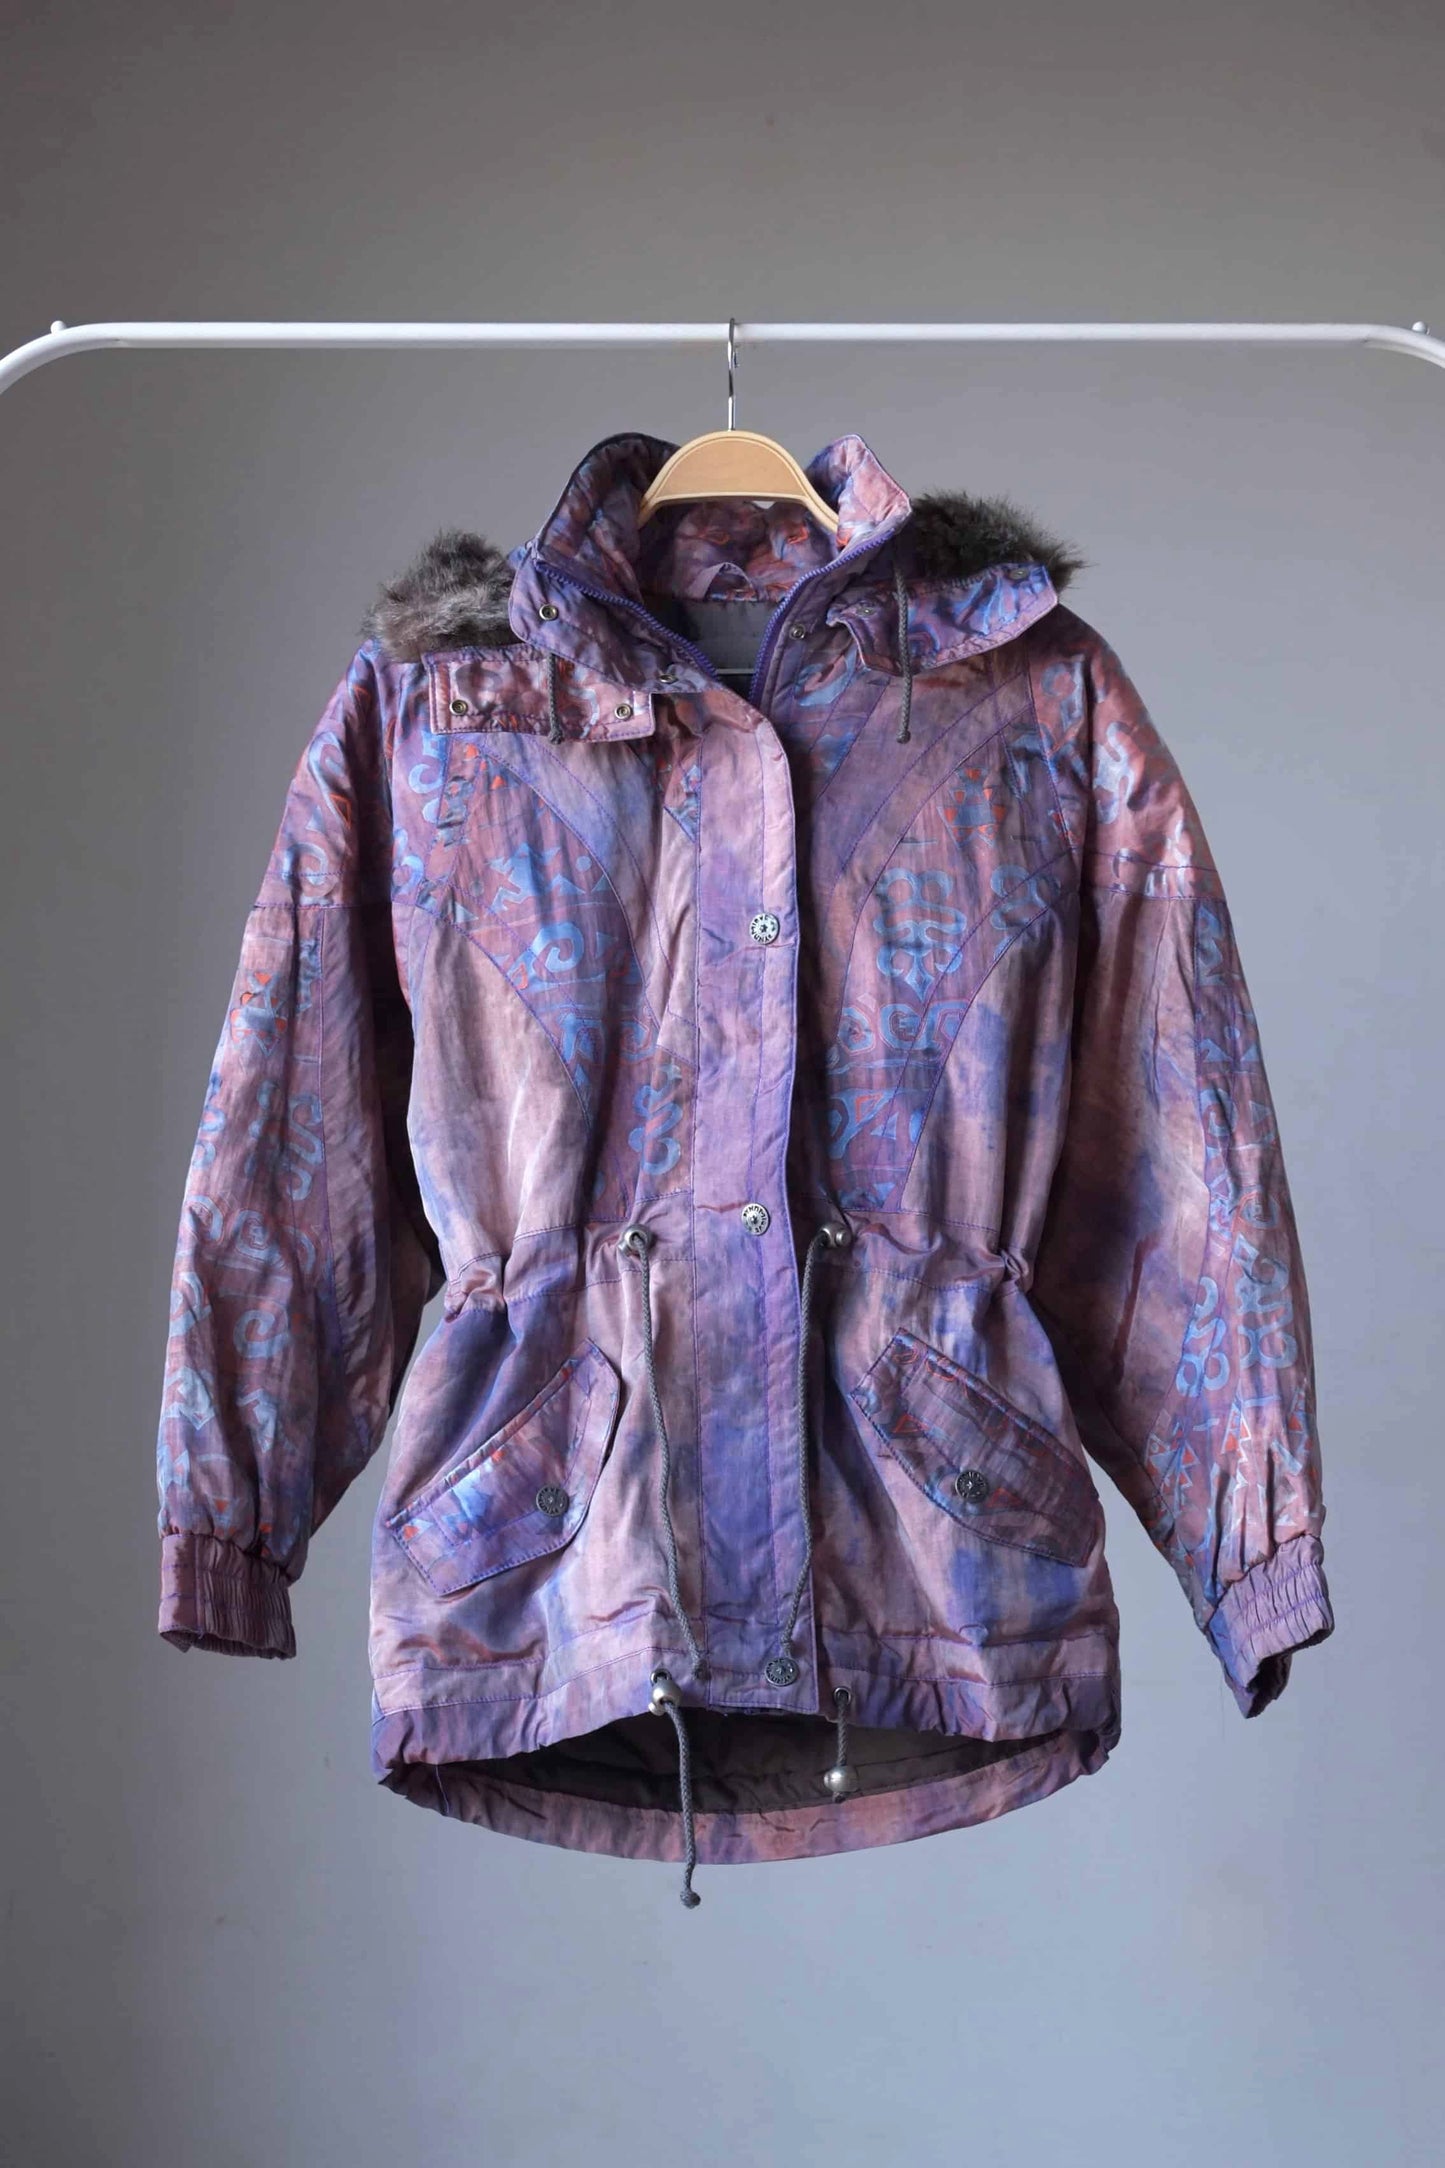 Vintage 90's Women's Ski Jacket in tie dye with fur lined hoodie on hanger